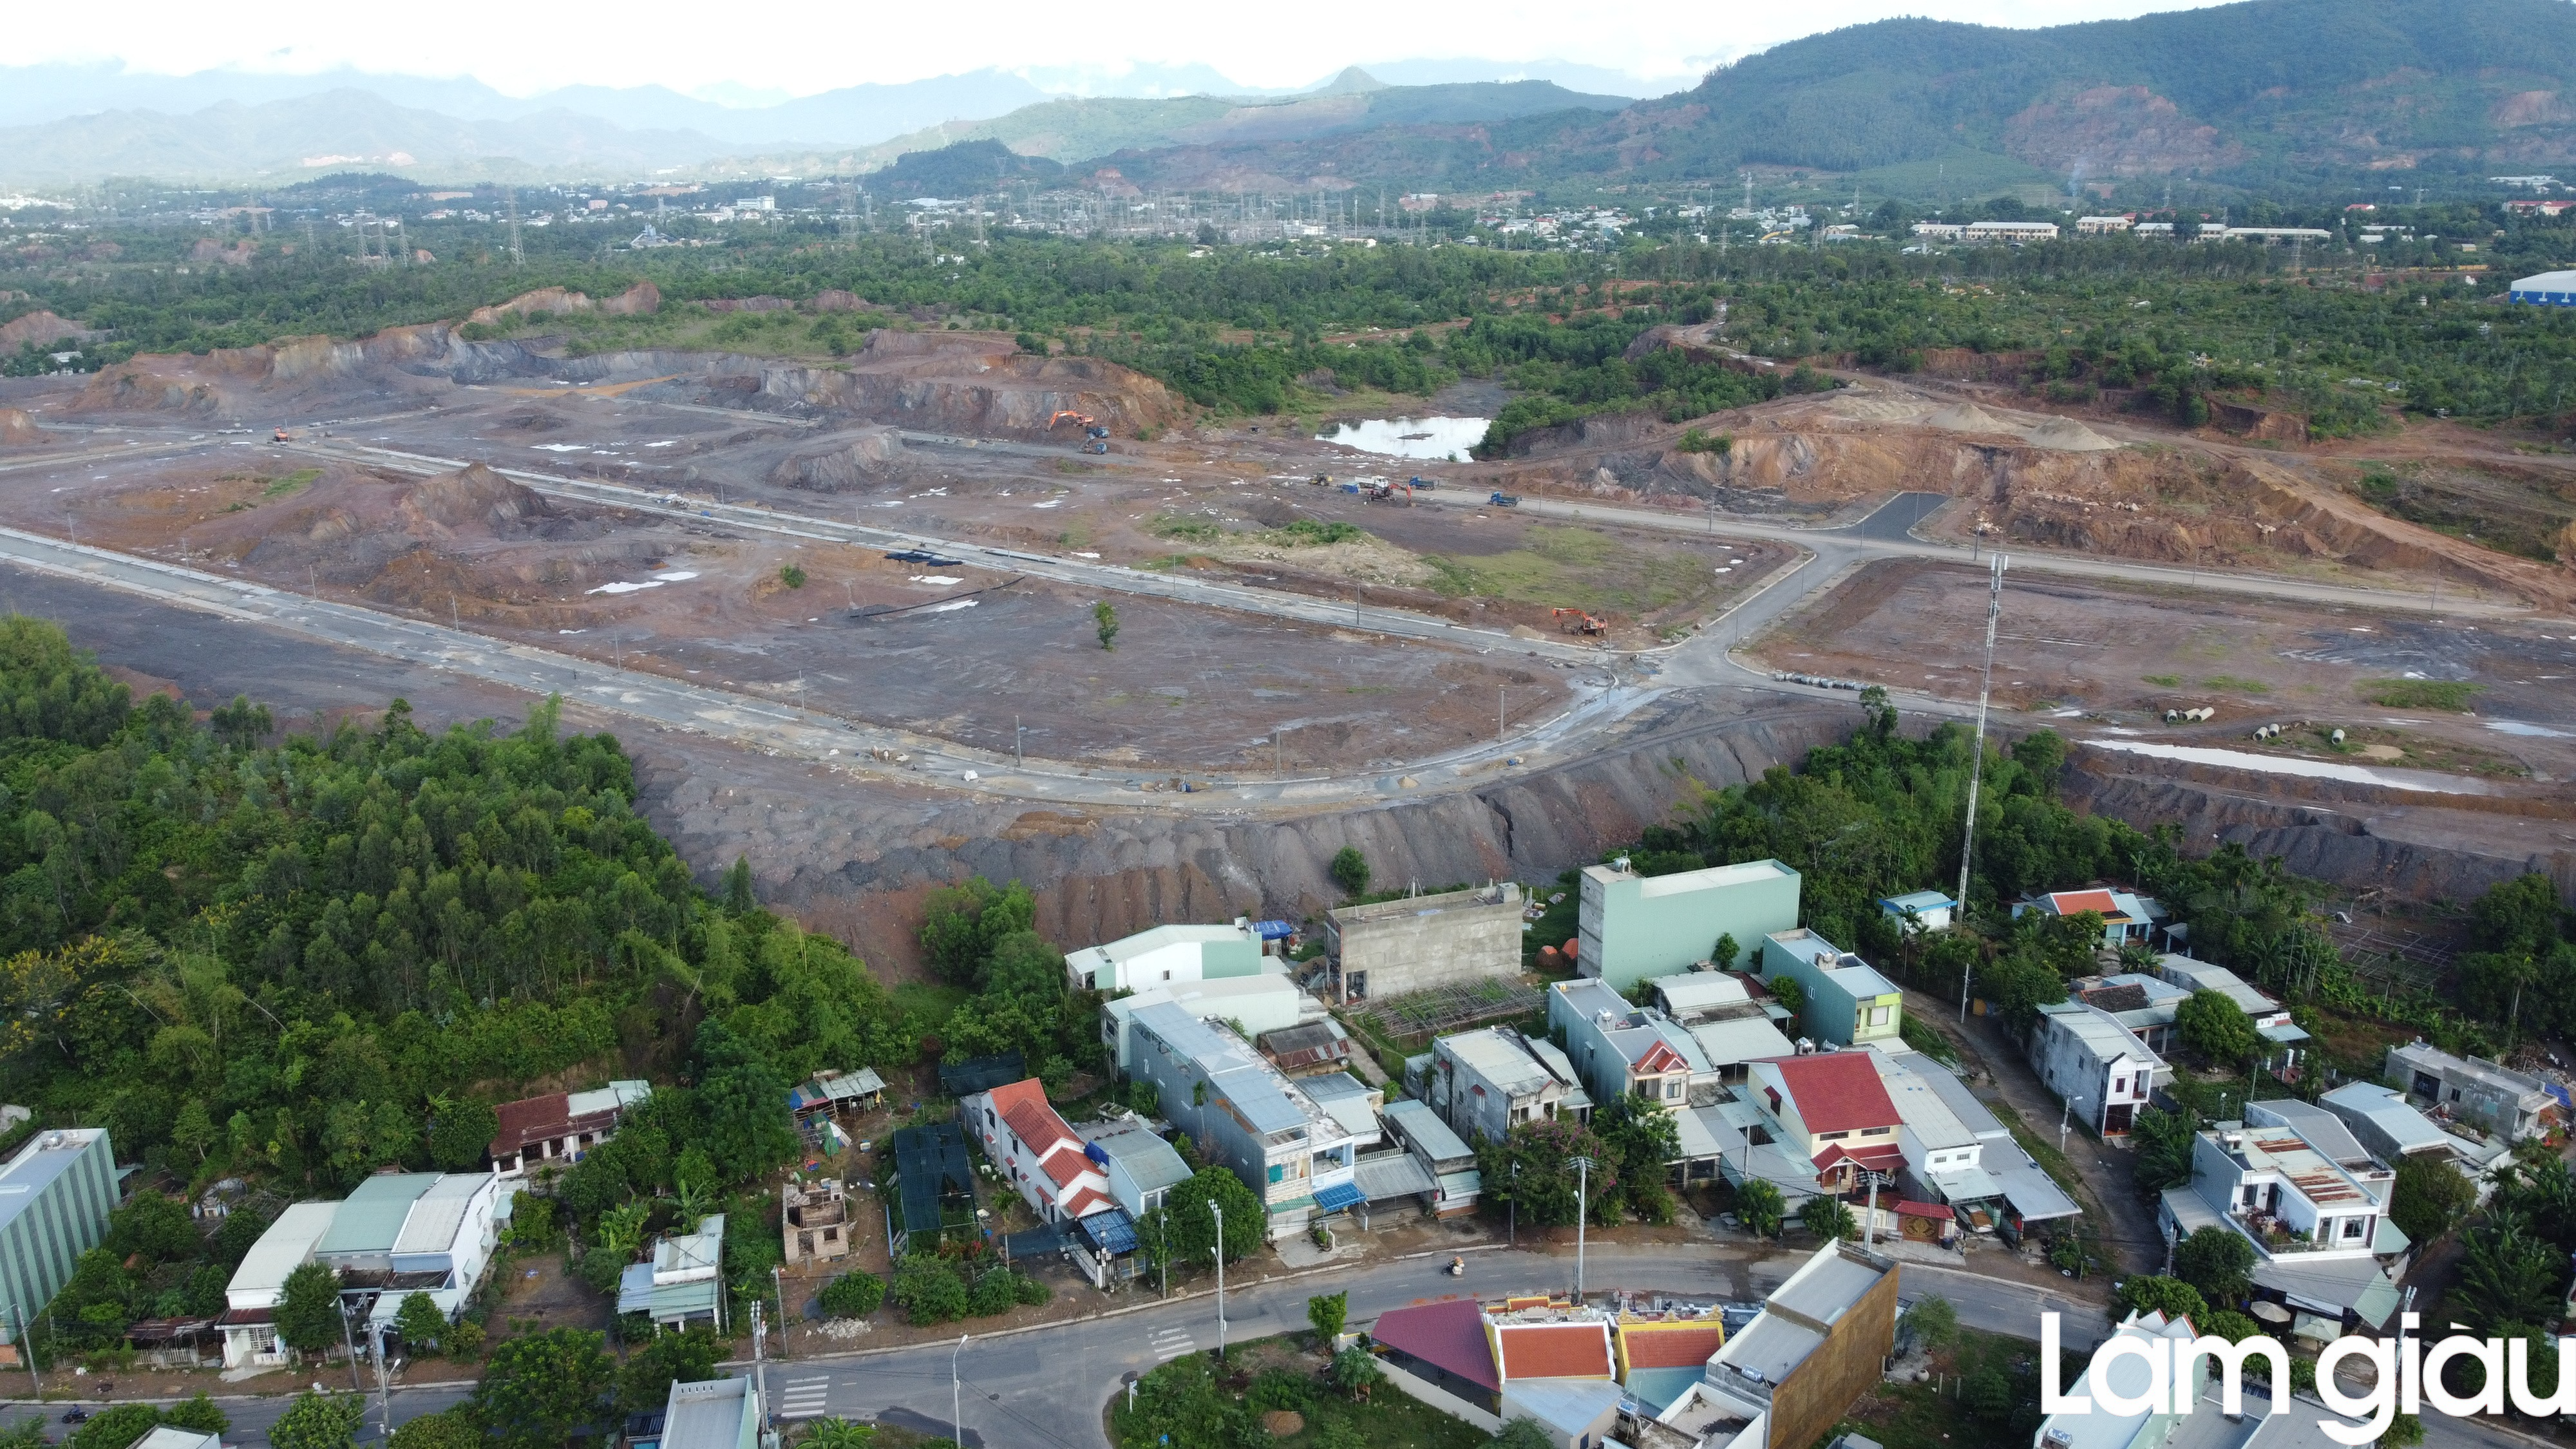 Toàn cảnh khu đất Đà Nẵng quy hoạch, kêu gọi đầu tư Khu công nghiệp Hòa Cầm giai đoạn 2